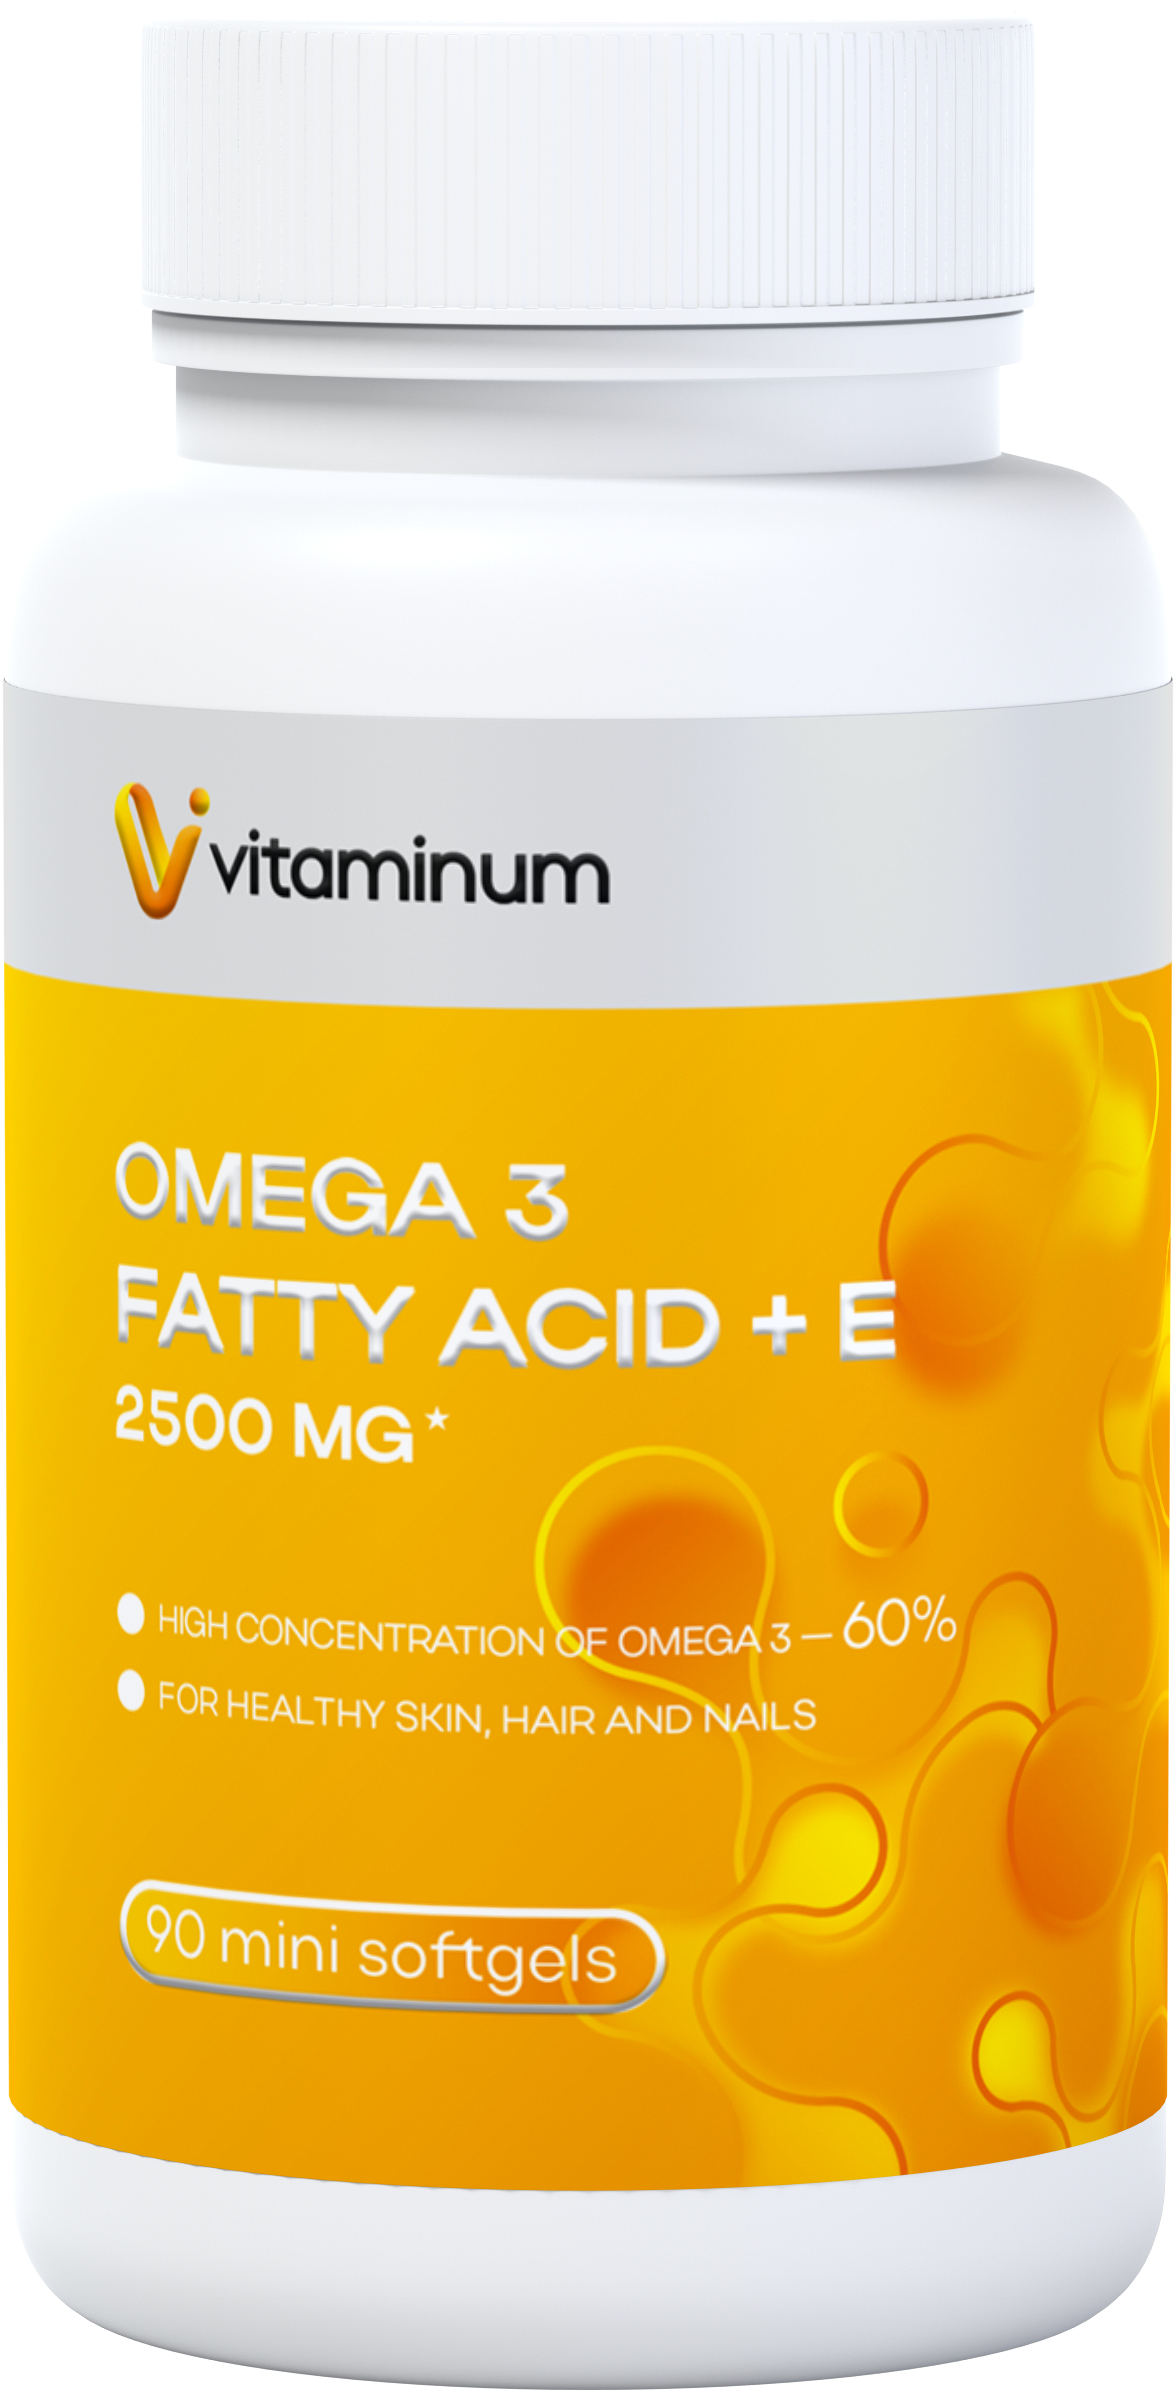  Vitaminum ОМЕГА 3 60% + витамин Е (2500 MG*) 90 капсул 700 мг  в Тосно